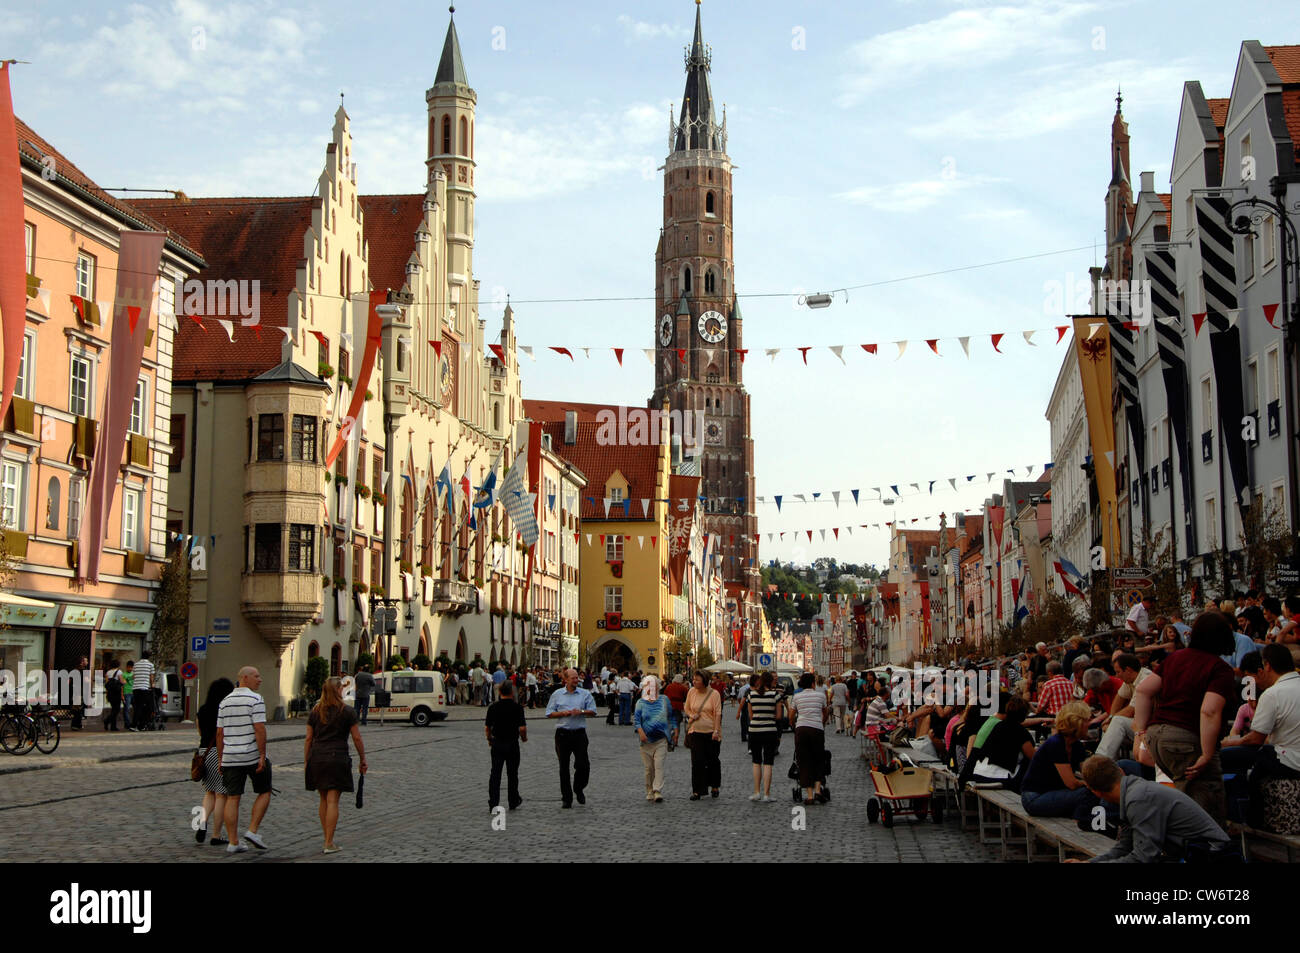 Landshut Stadt am Stadt fest "Landshuter Hochzeitswochen", die Basilika St. Martin im Hintergrund, Deutschland, Bayern, Niederbayern, Niederbayern, Landshut Stockfoto